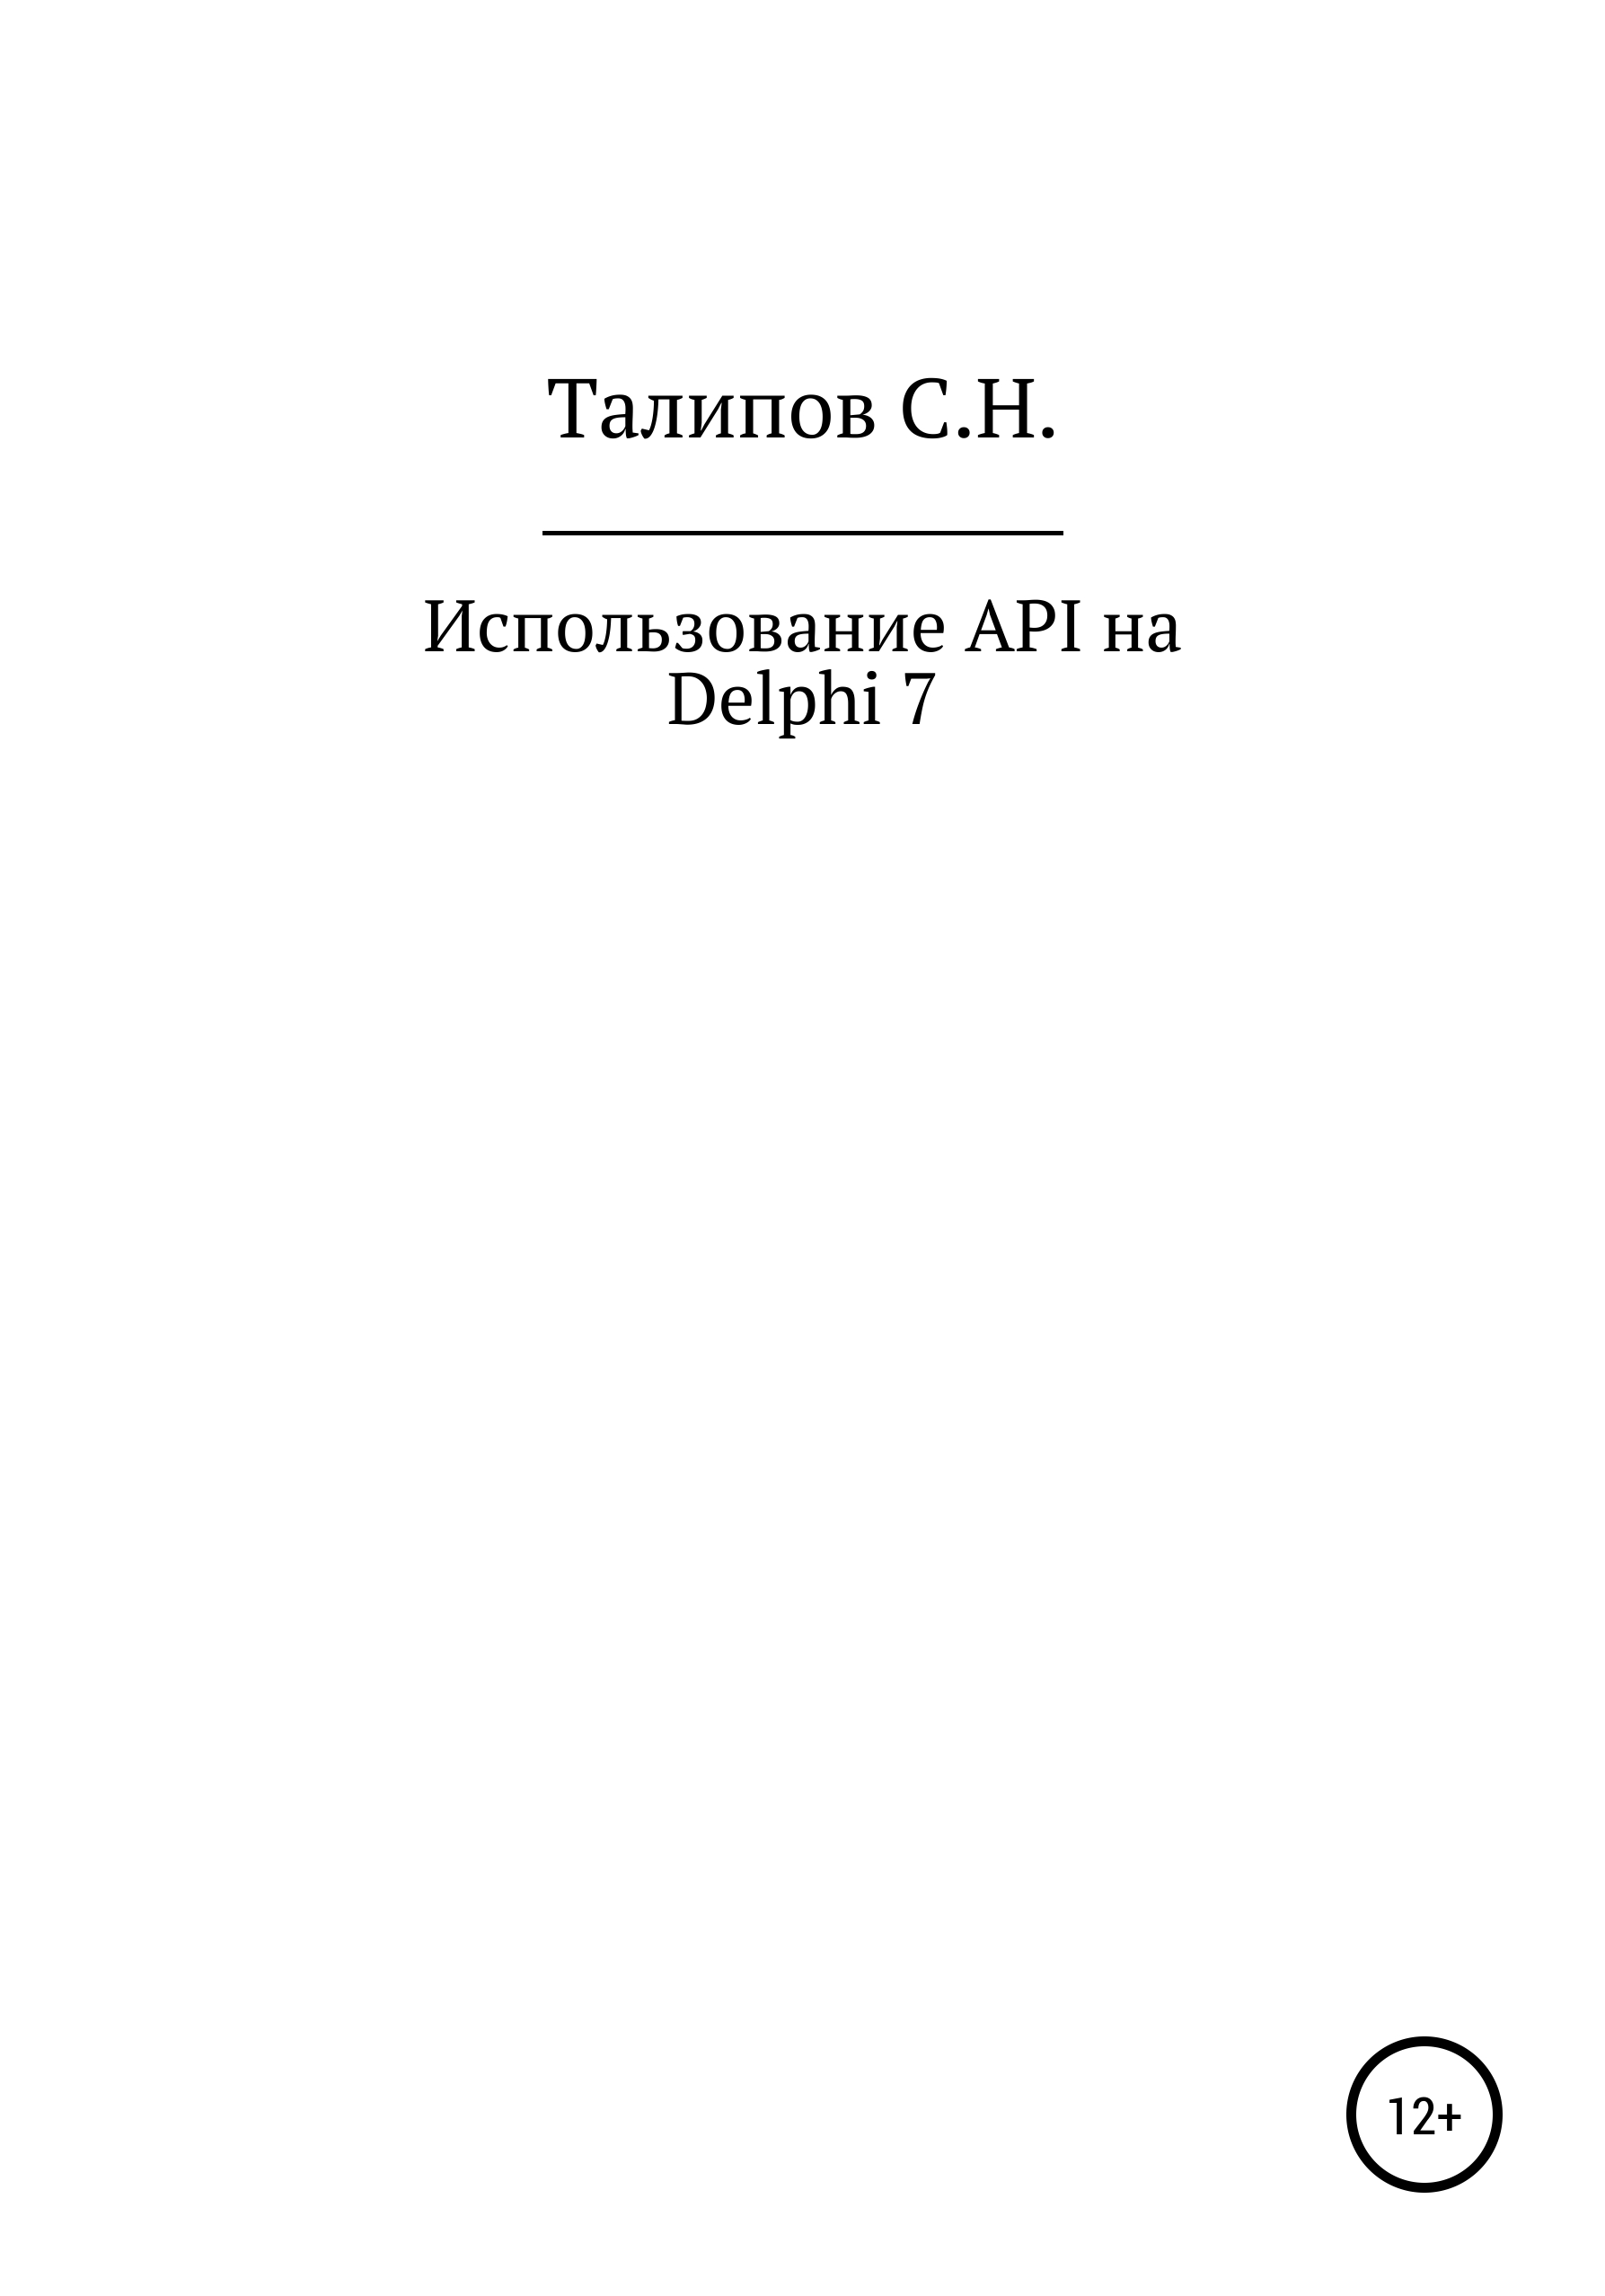 Книга  Иcпользование API на Delphi 7 созданная Сергей Николаевич Талипов может относится к жанру программирование. Стоимость электронной книги Иcпользование API на Delphi 7 с идентификатором 65506387 составляет  руб.